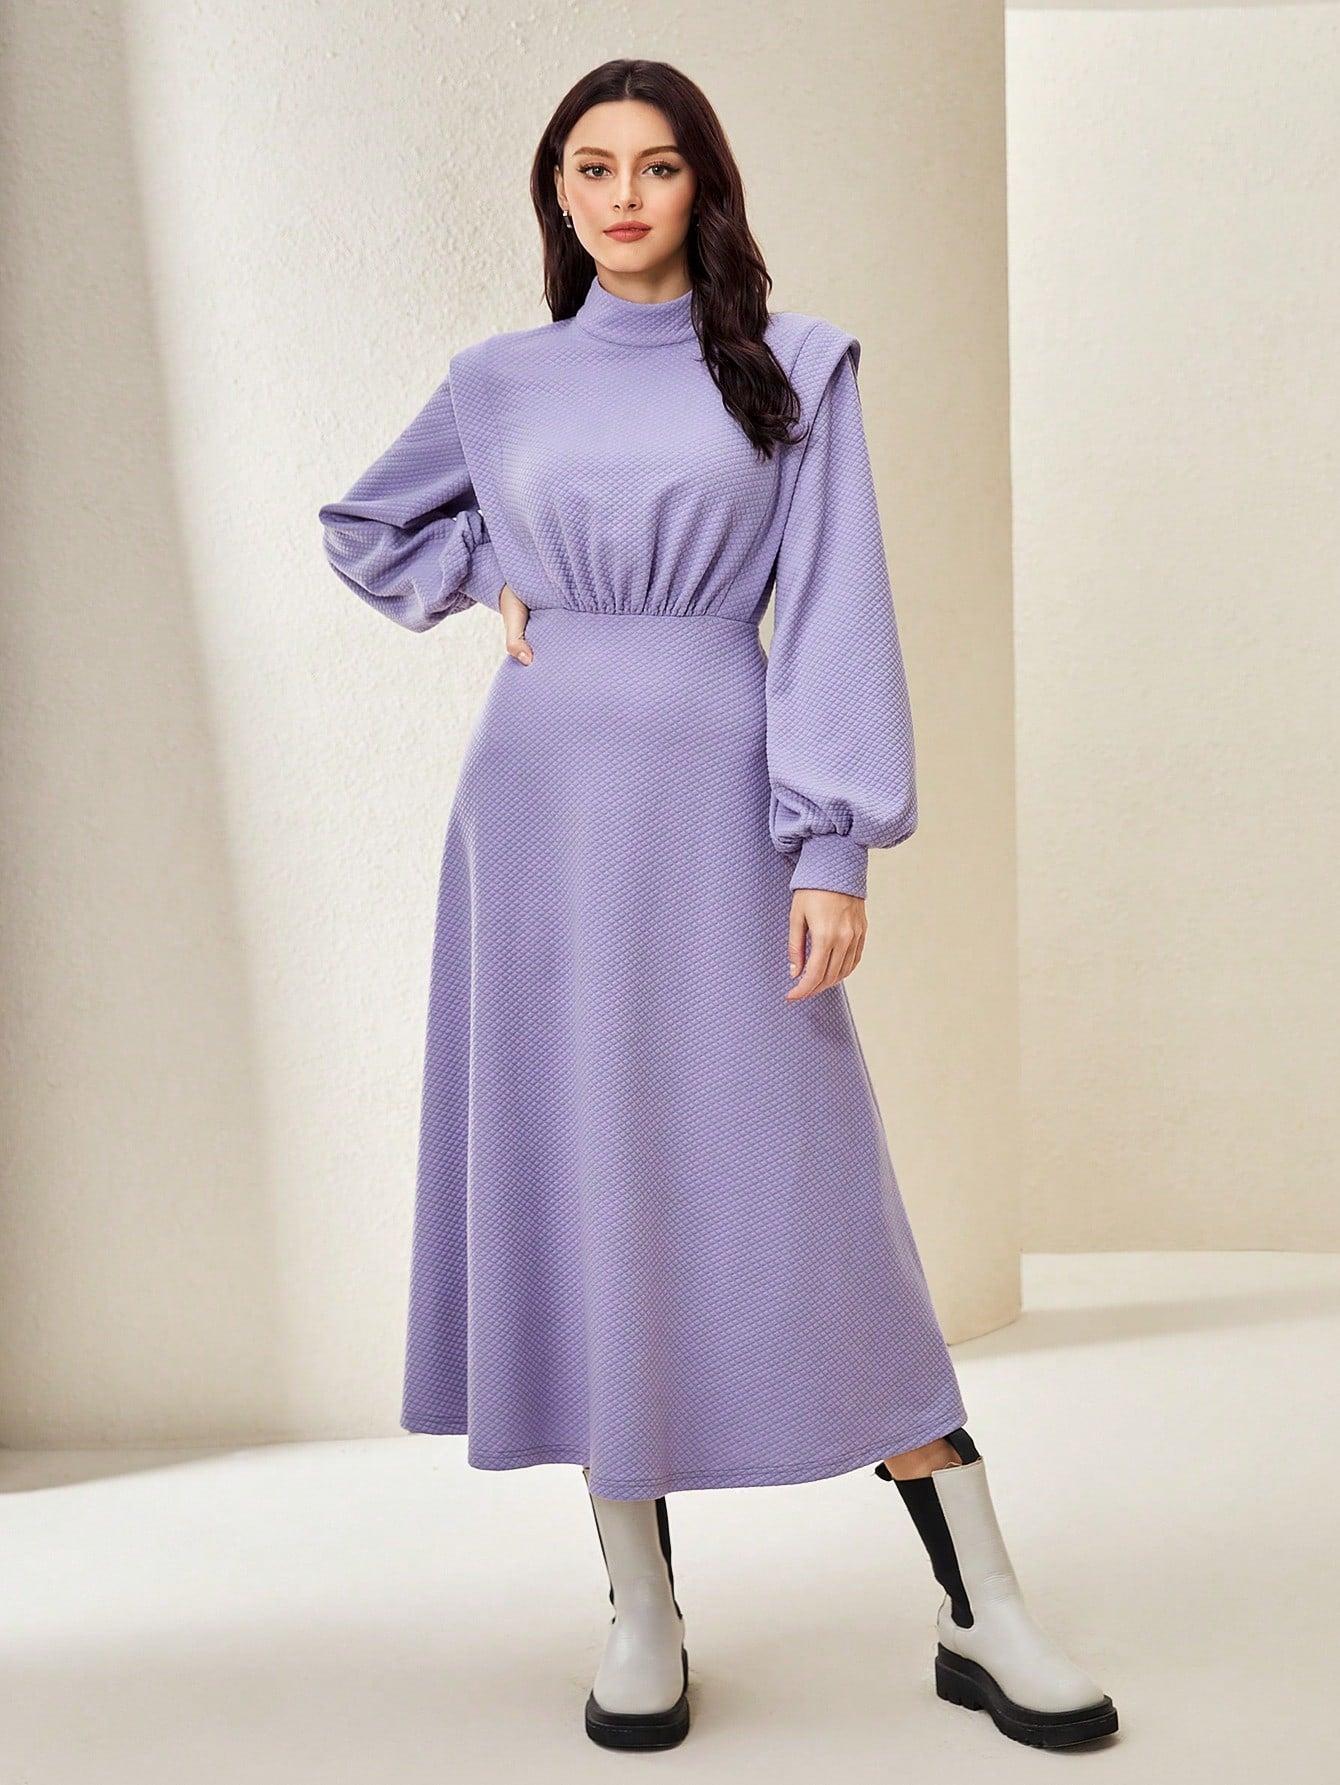 fioletowa sukienka do połowy łydki tekstura